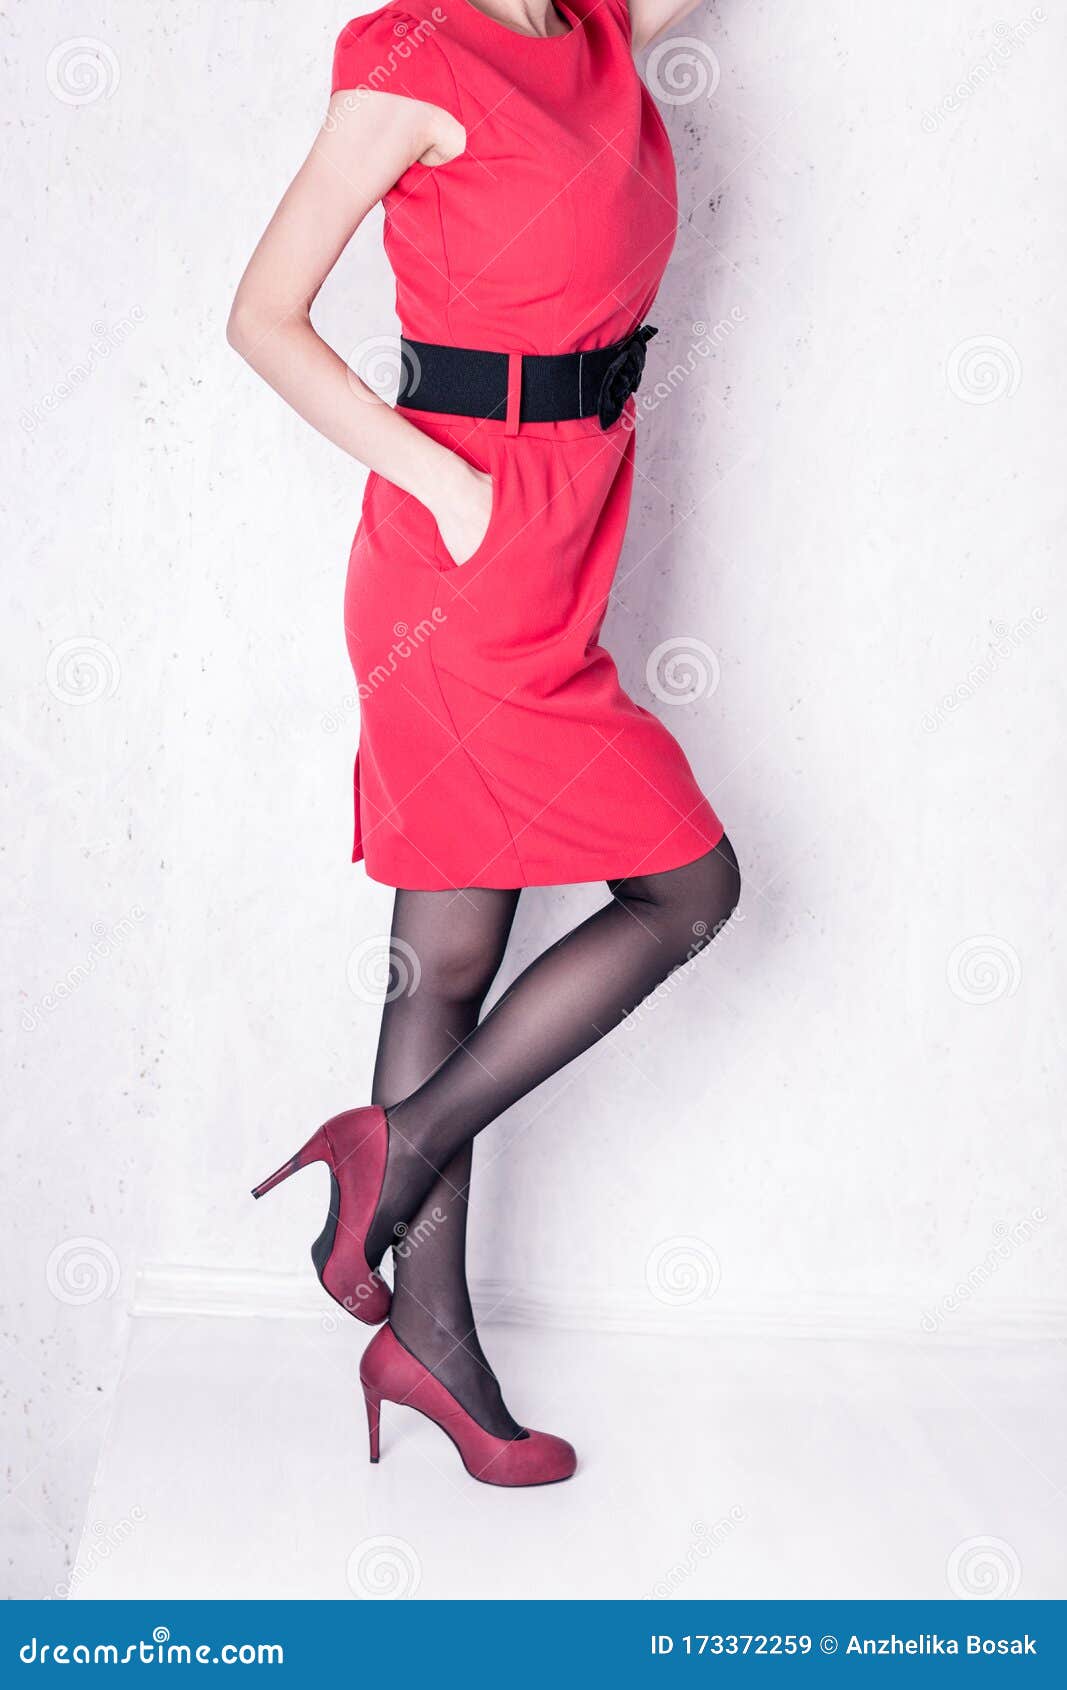 Chica En Un Vestido Rojo Con Cinturón Negro Y Tacones Altos Imagen de archivo - Imagen rojo, diva: 173372259